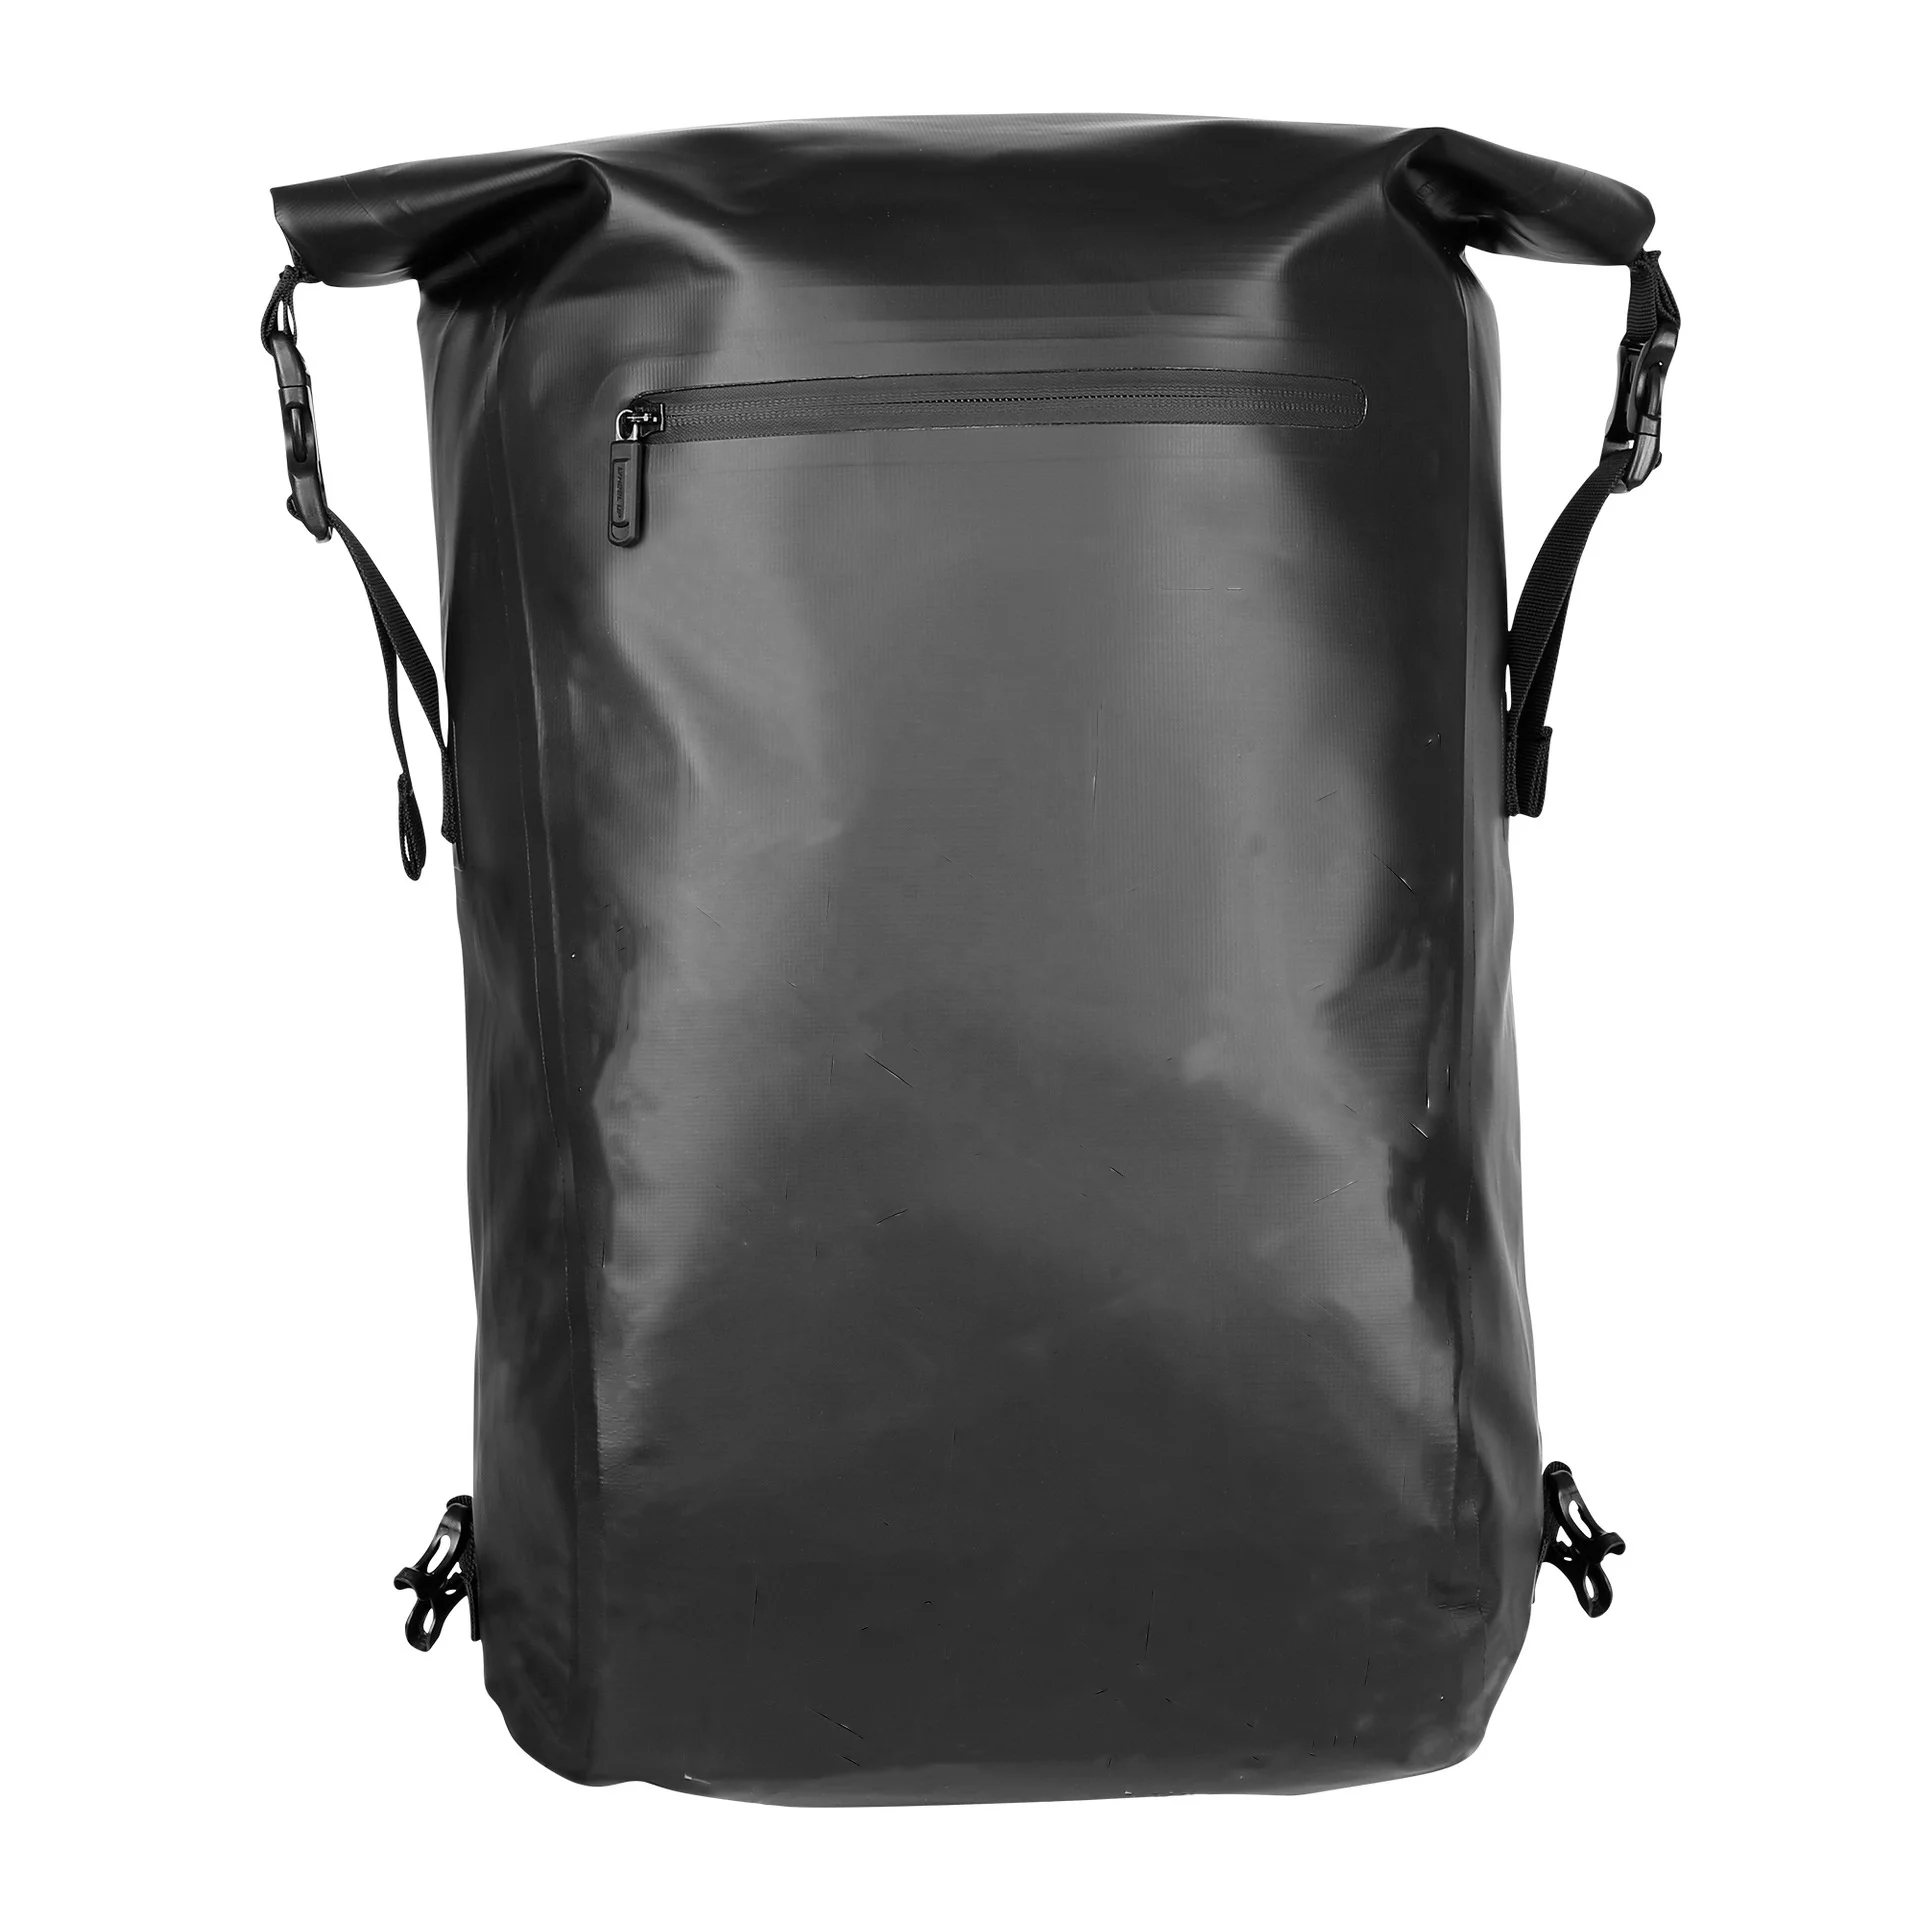 

VANNO Fully Waterproof Bicycle Rear Rack Trunk Bag Laptop Backpack 3 in 1 Rucksack Bike Pannier Backpack with New Hook System, Black